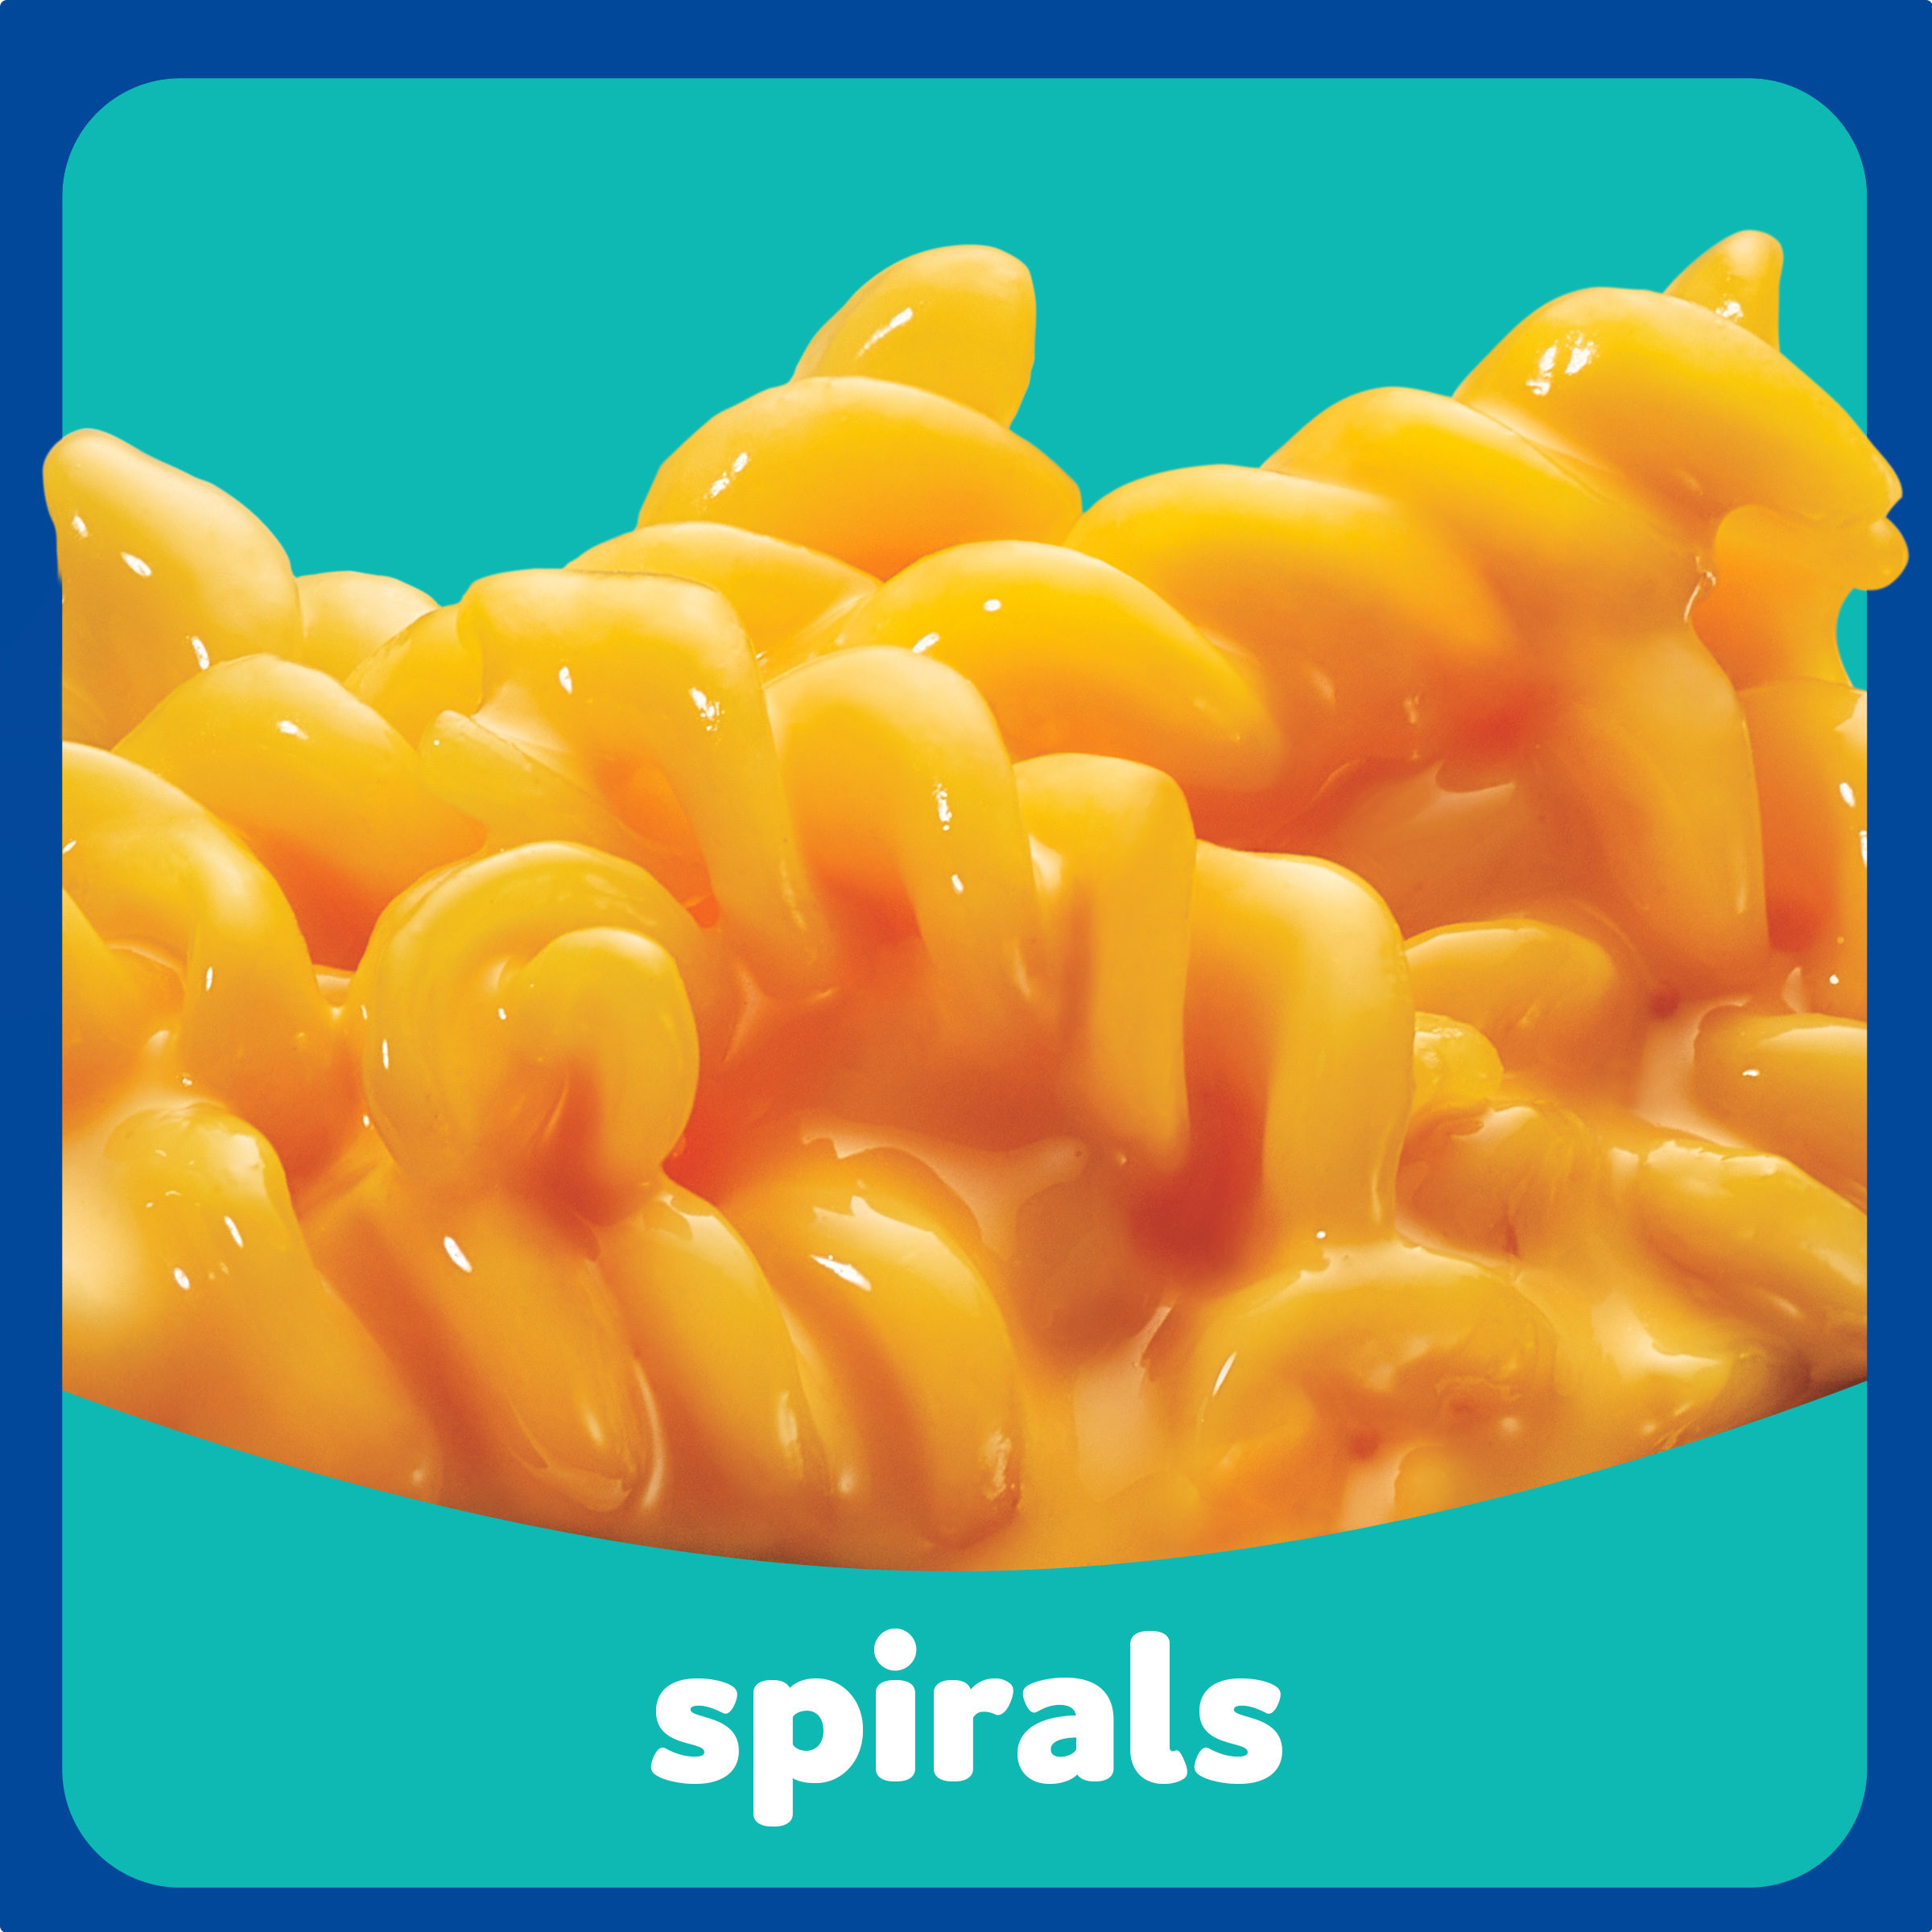 Spirals Original Mac & Cheese Macaroni and Cheese Dinner